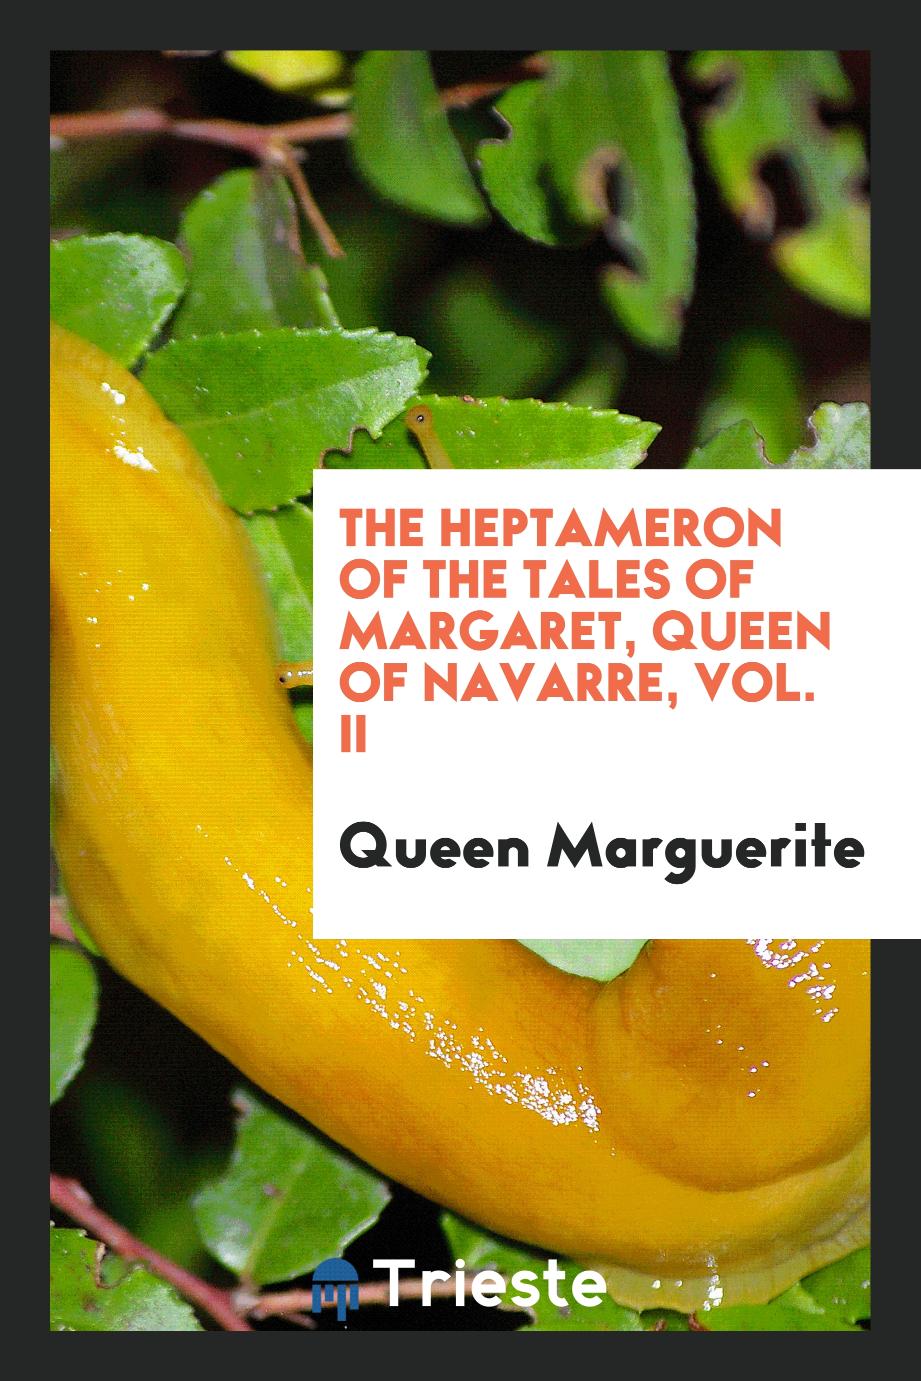 The Heptameron of the tales of Margaret, Queen of Navarre, Vol. II